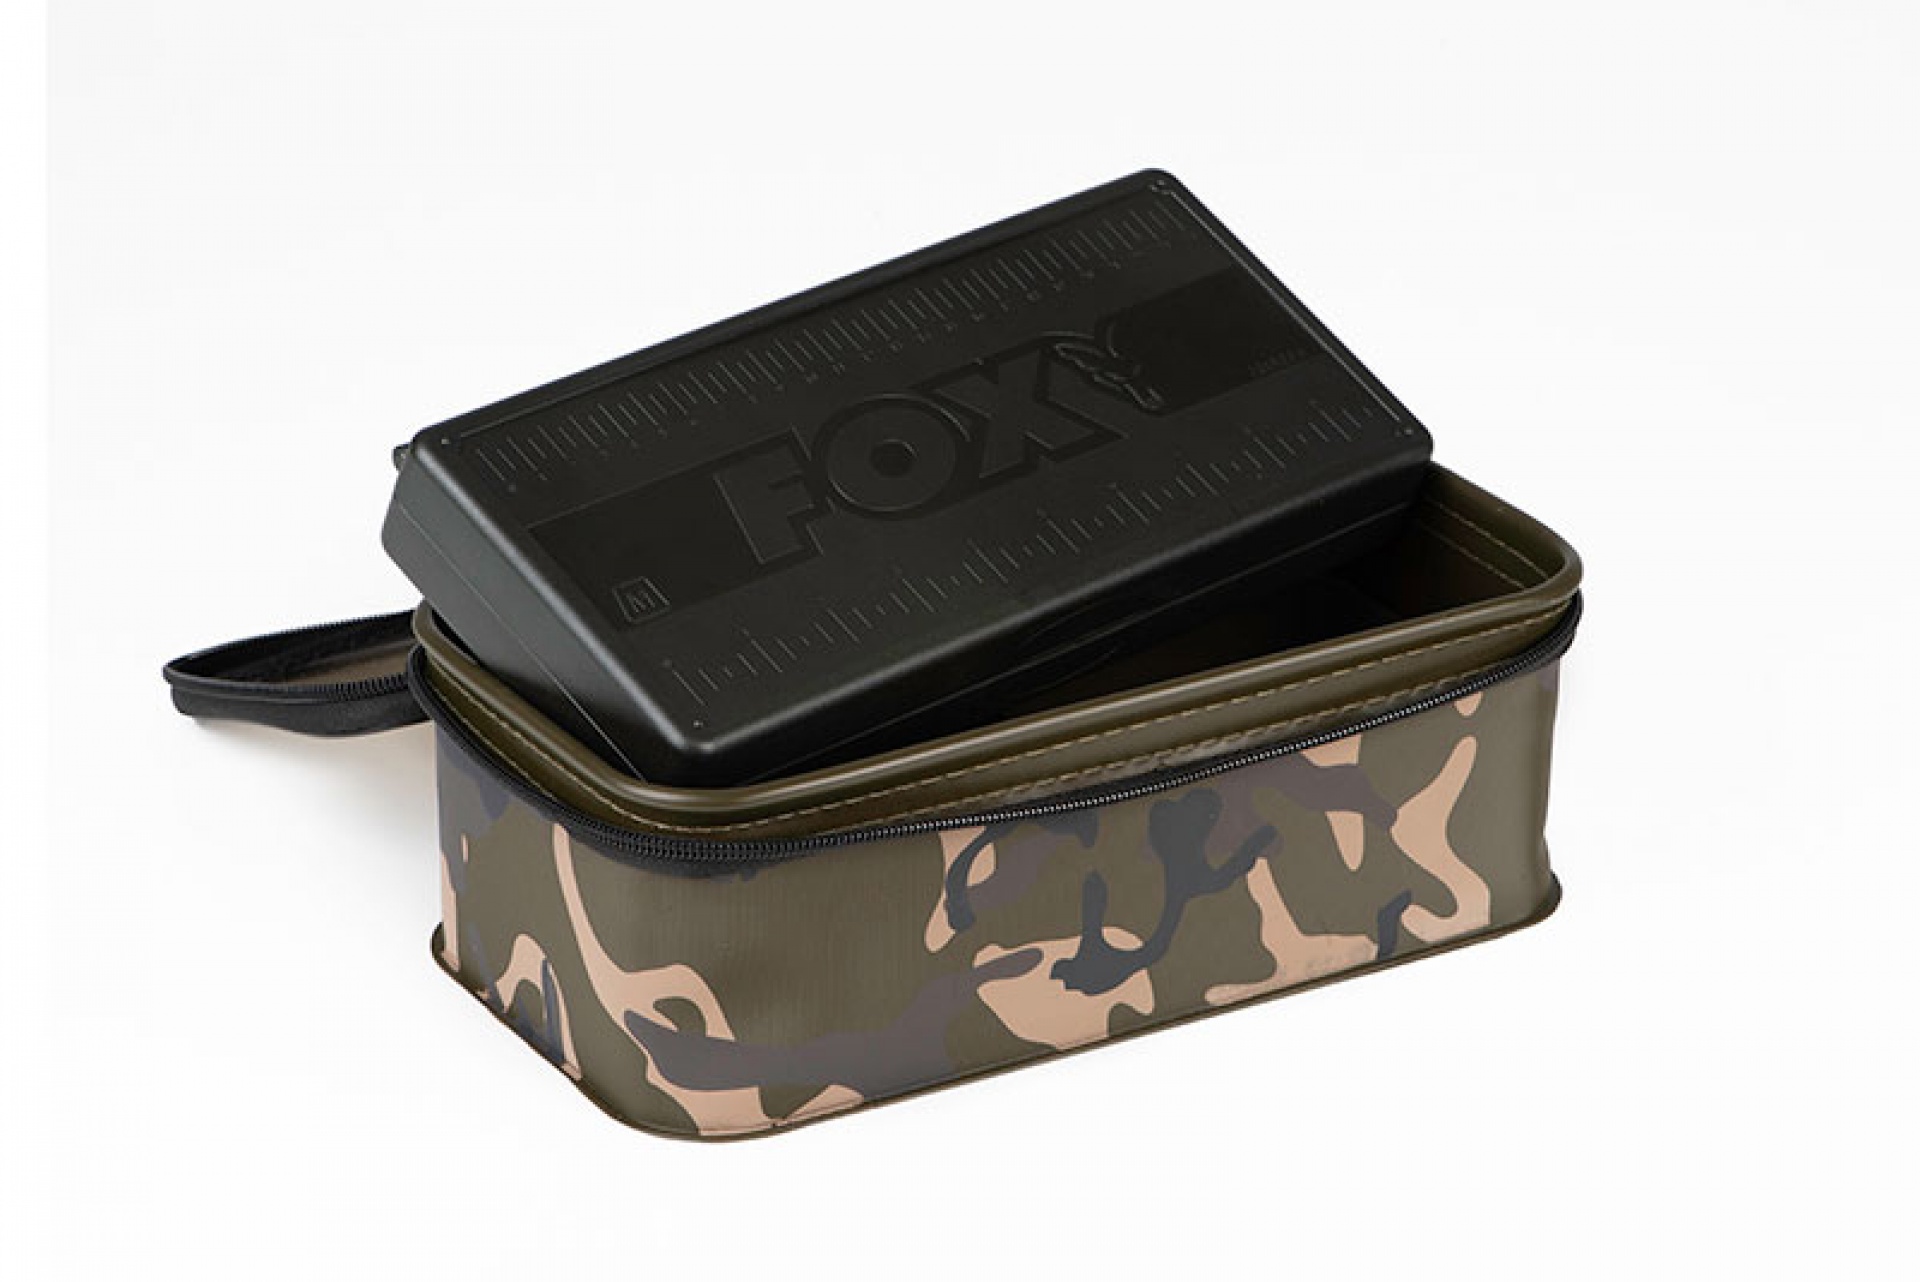 Fox Aquos Camolite Rig Box and Tackle Box